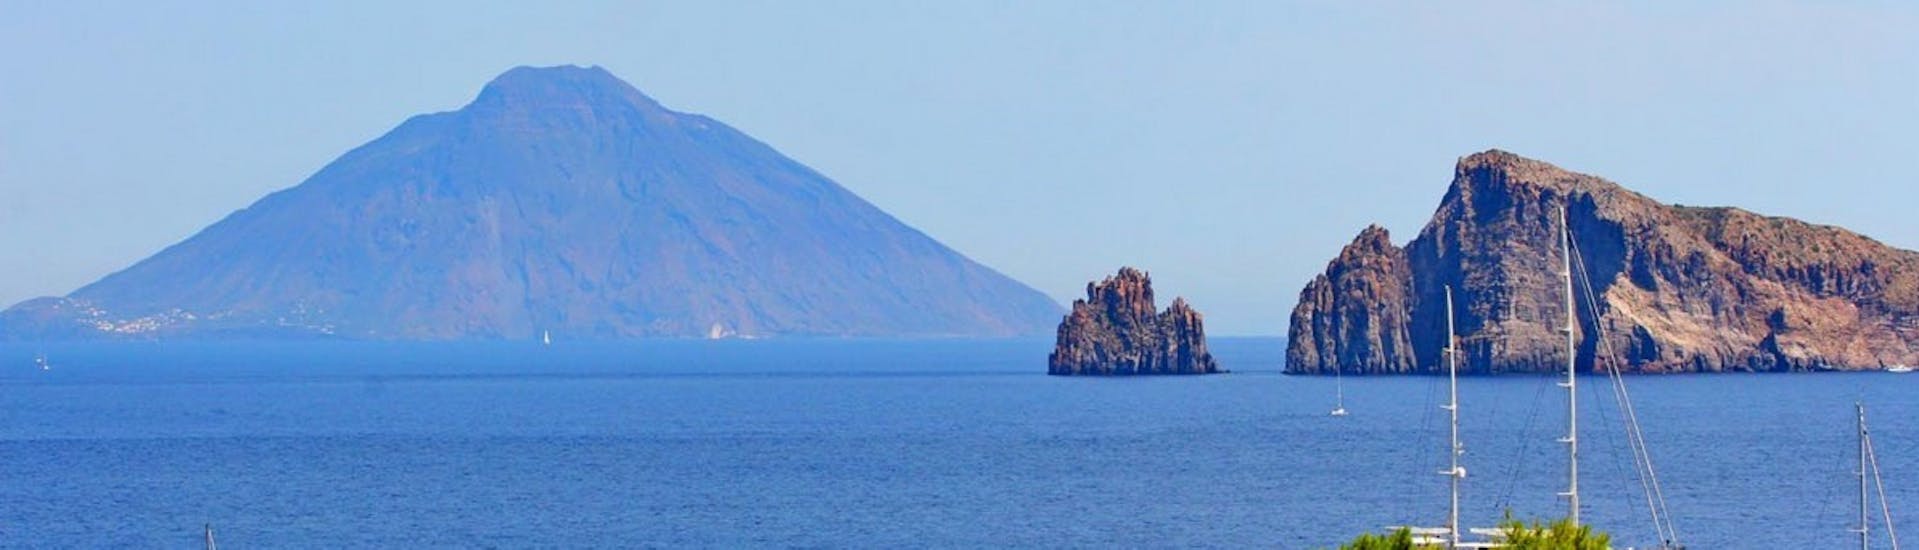 Foto van de Eolische eilanden genomen tijdens de boottocht naar Stromboli, Lipari en Vulcano vanuit Tropea.